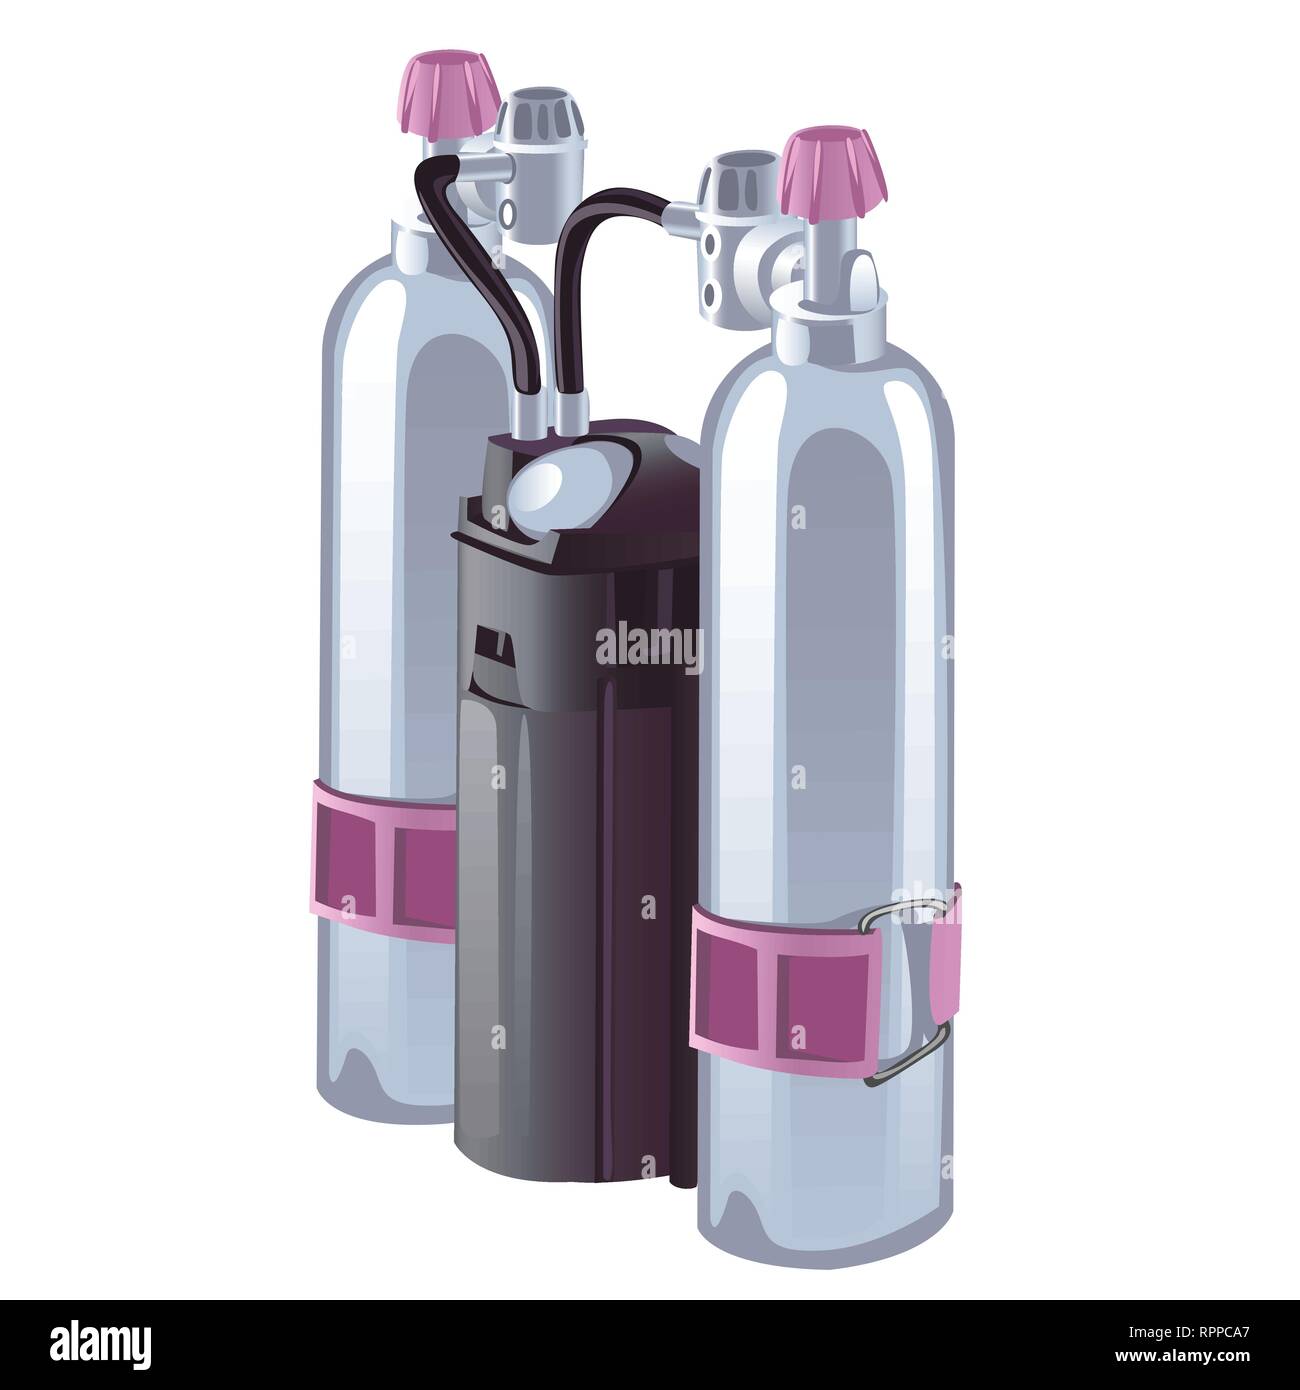 Gasflaschen mit Druckminderer für die Atmung auf weißem Hintergrund. Vektor cartoon Close-up Abbildung. Stock Vektor